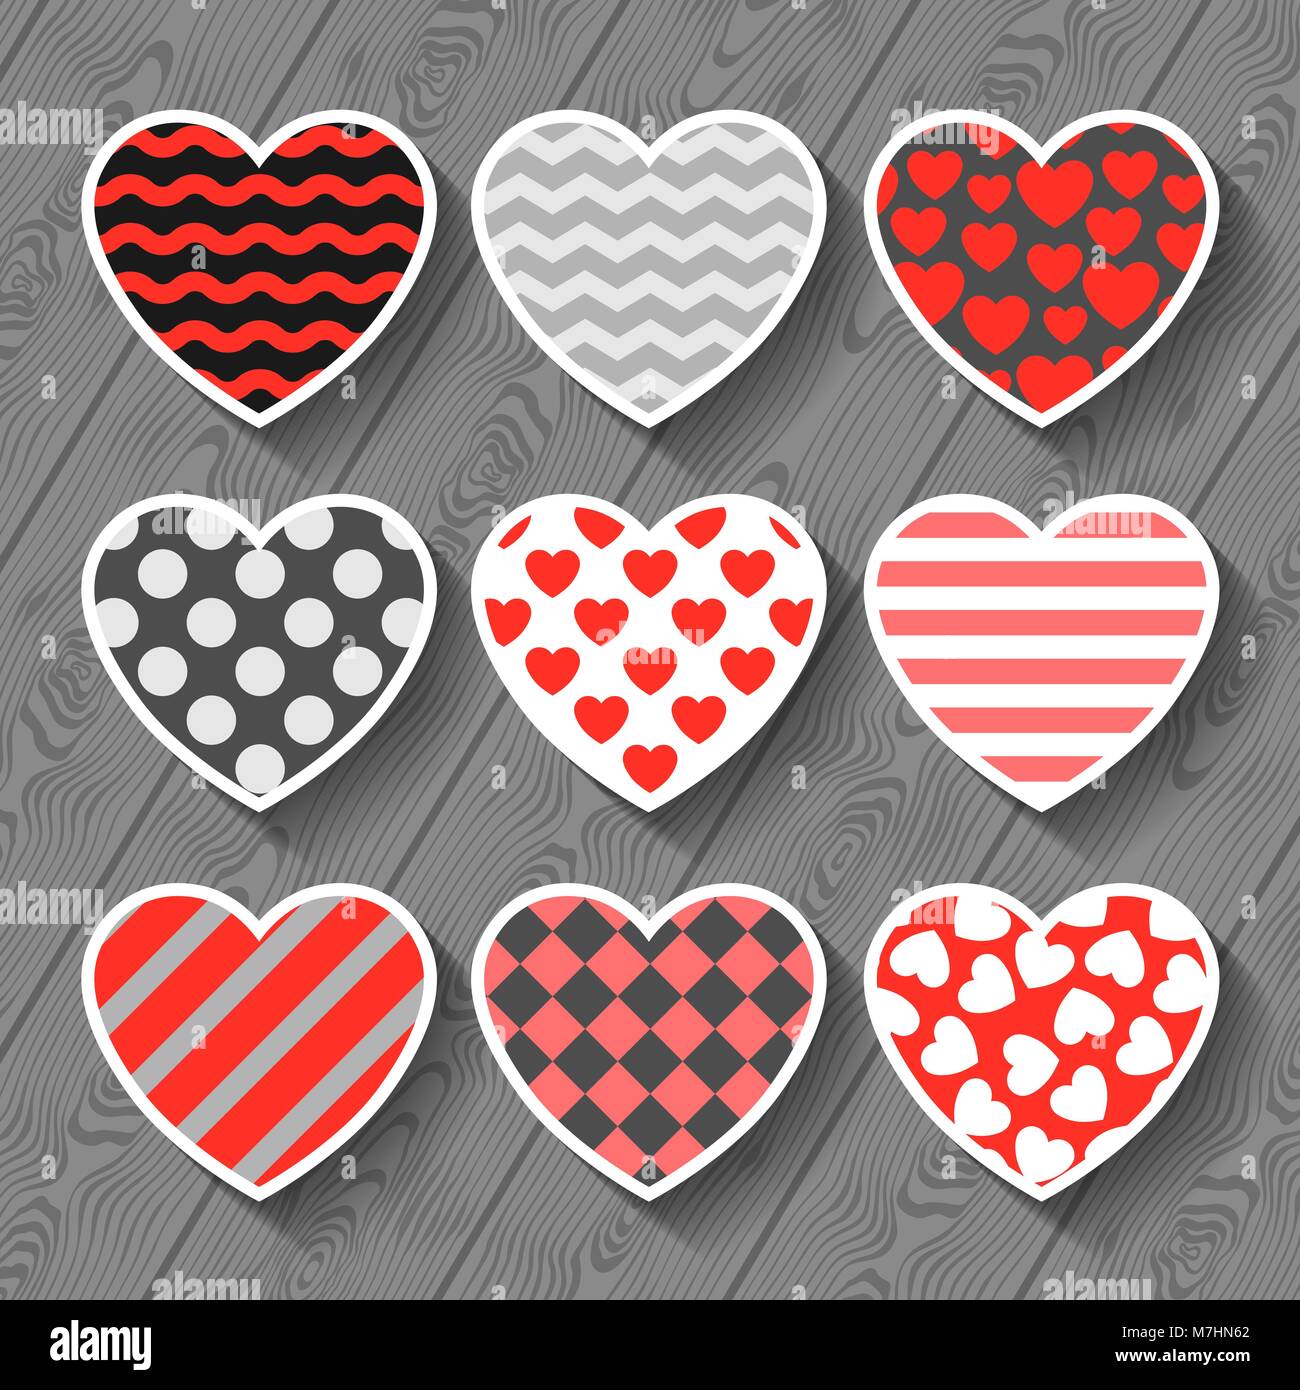 Conjunto de pegatinas, insignias y etiquetas para el día de San Valentín  con escuchar Vector de Stock de ©dofa80 137458138